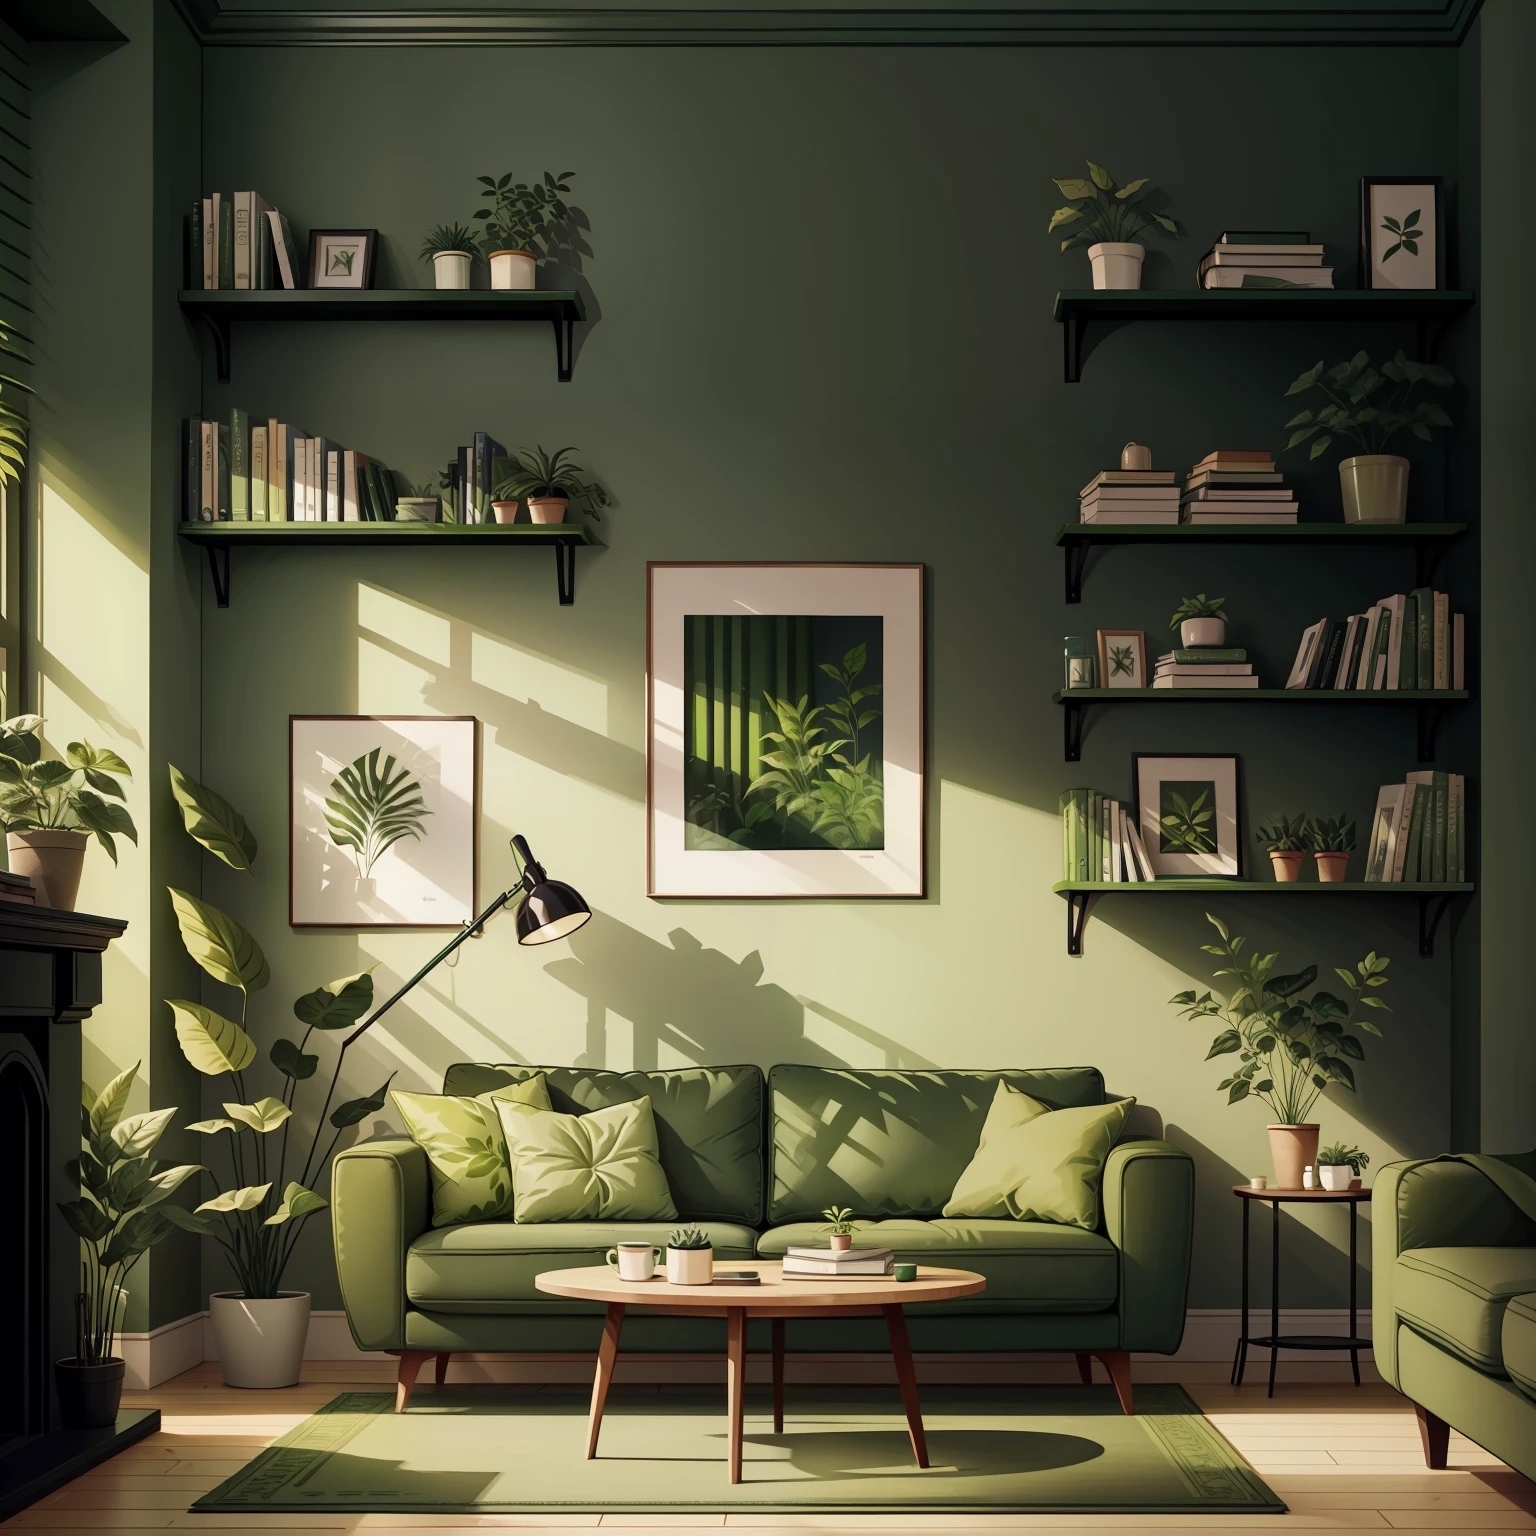 緑のソファと壁に緑の植物、本棚に本が置かれたリビングルーム